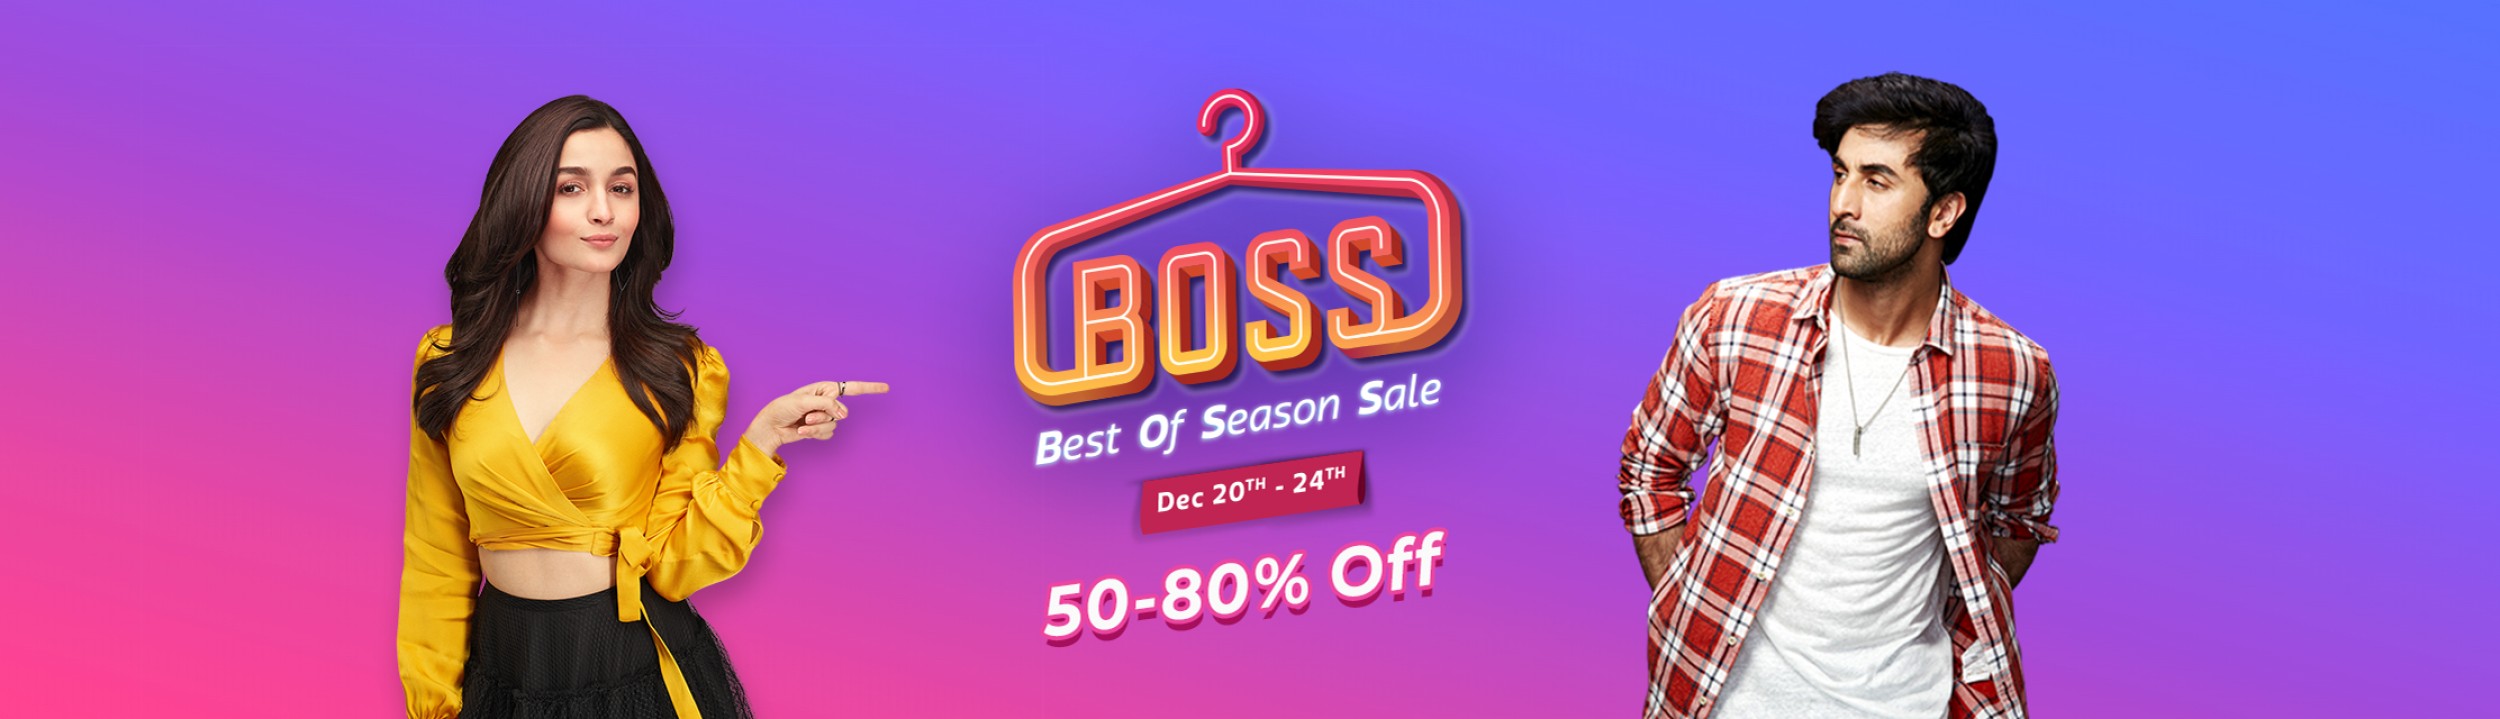 season Boss sale Fashion sale 